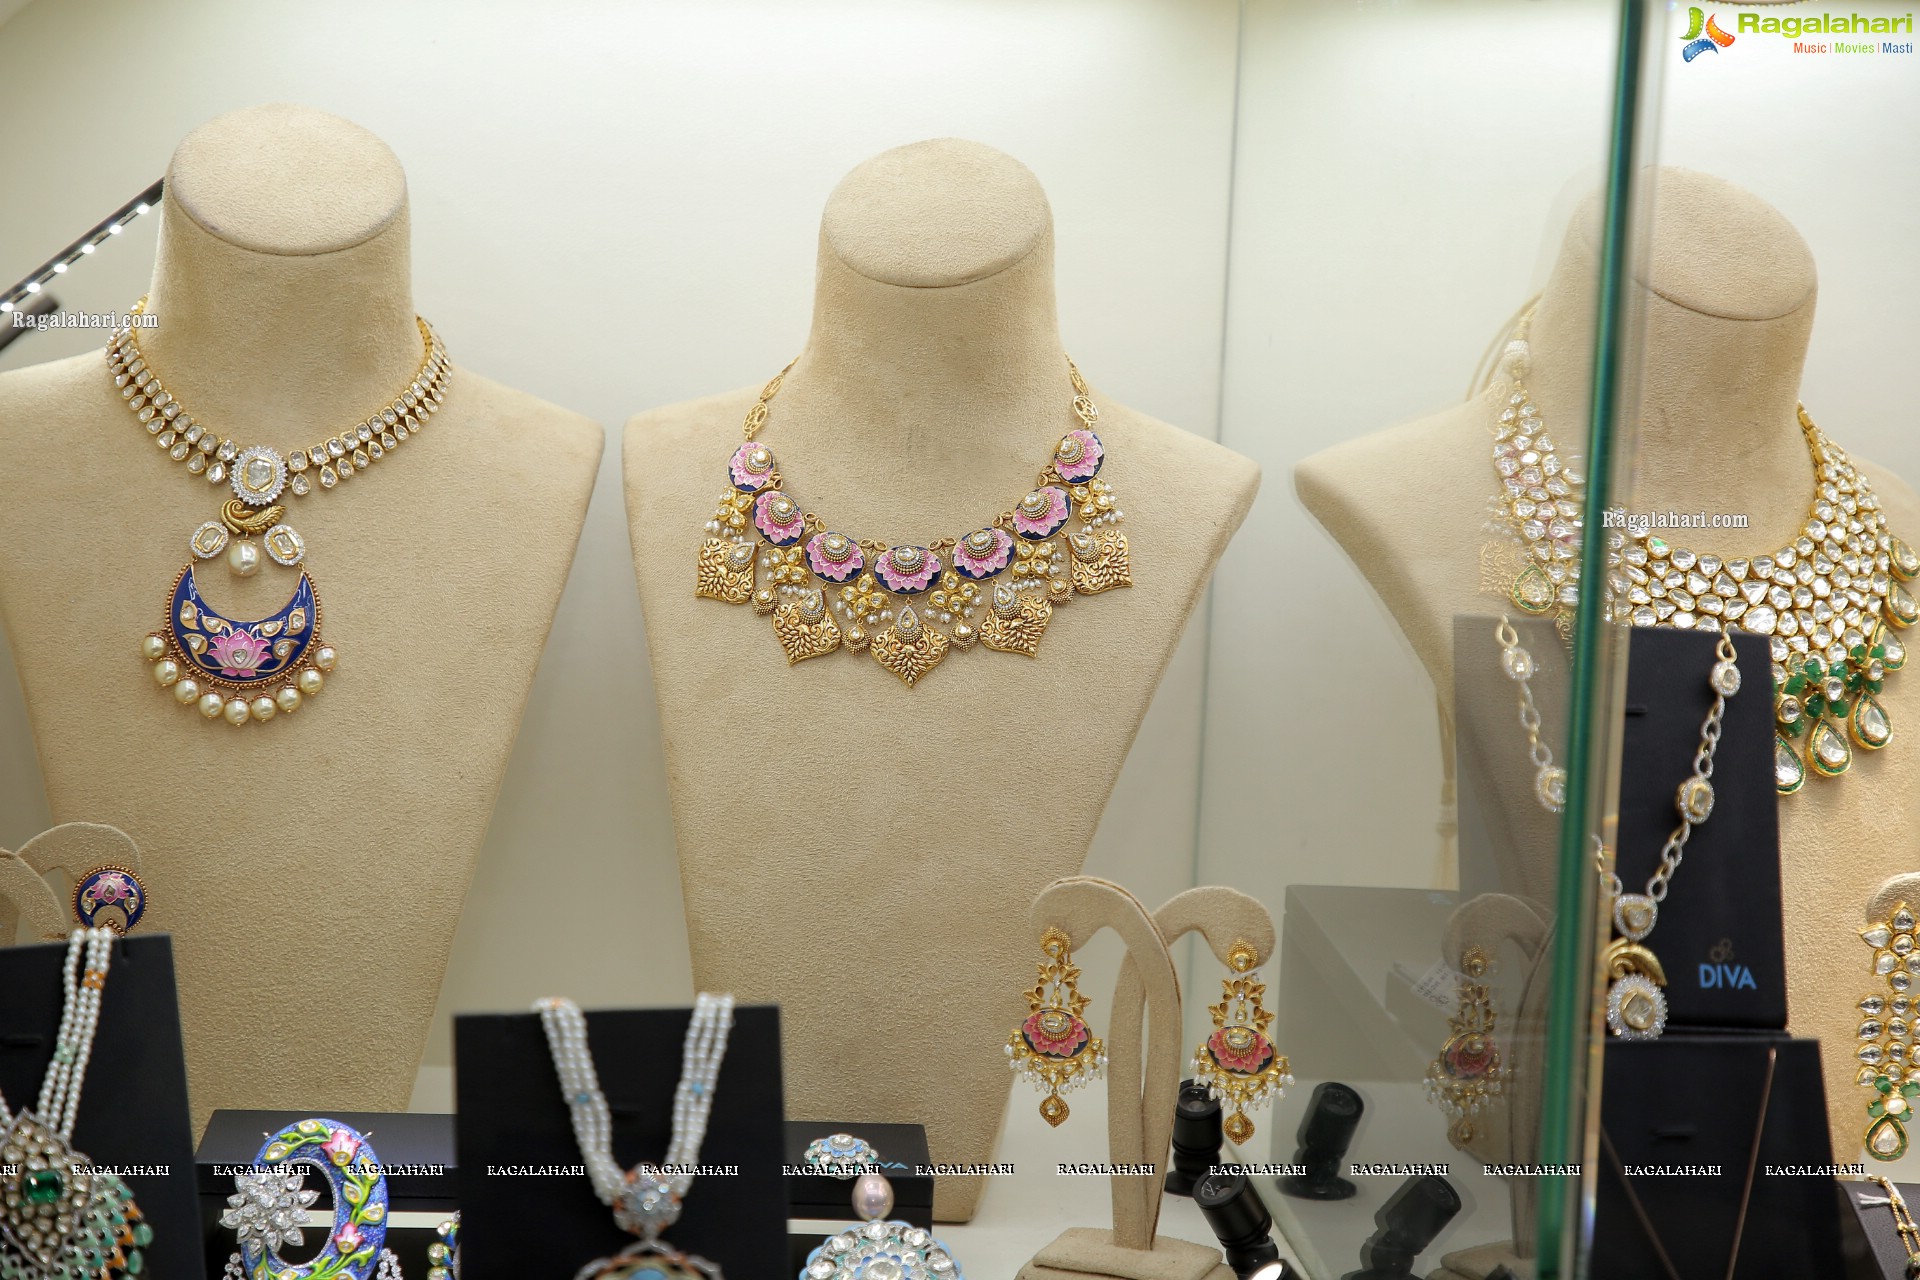 Diva Jewellery Exhibition Begins at Hotel Park Hyatt